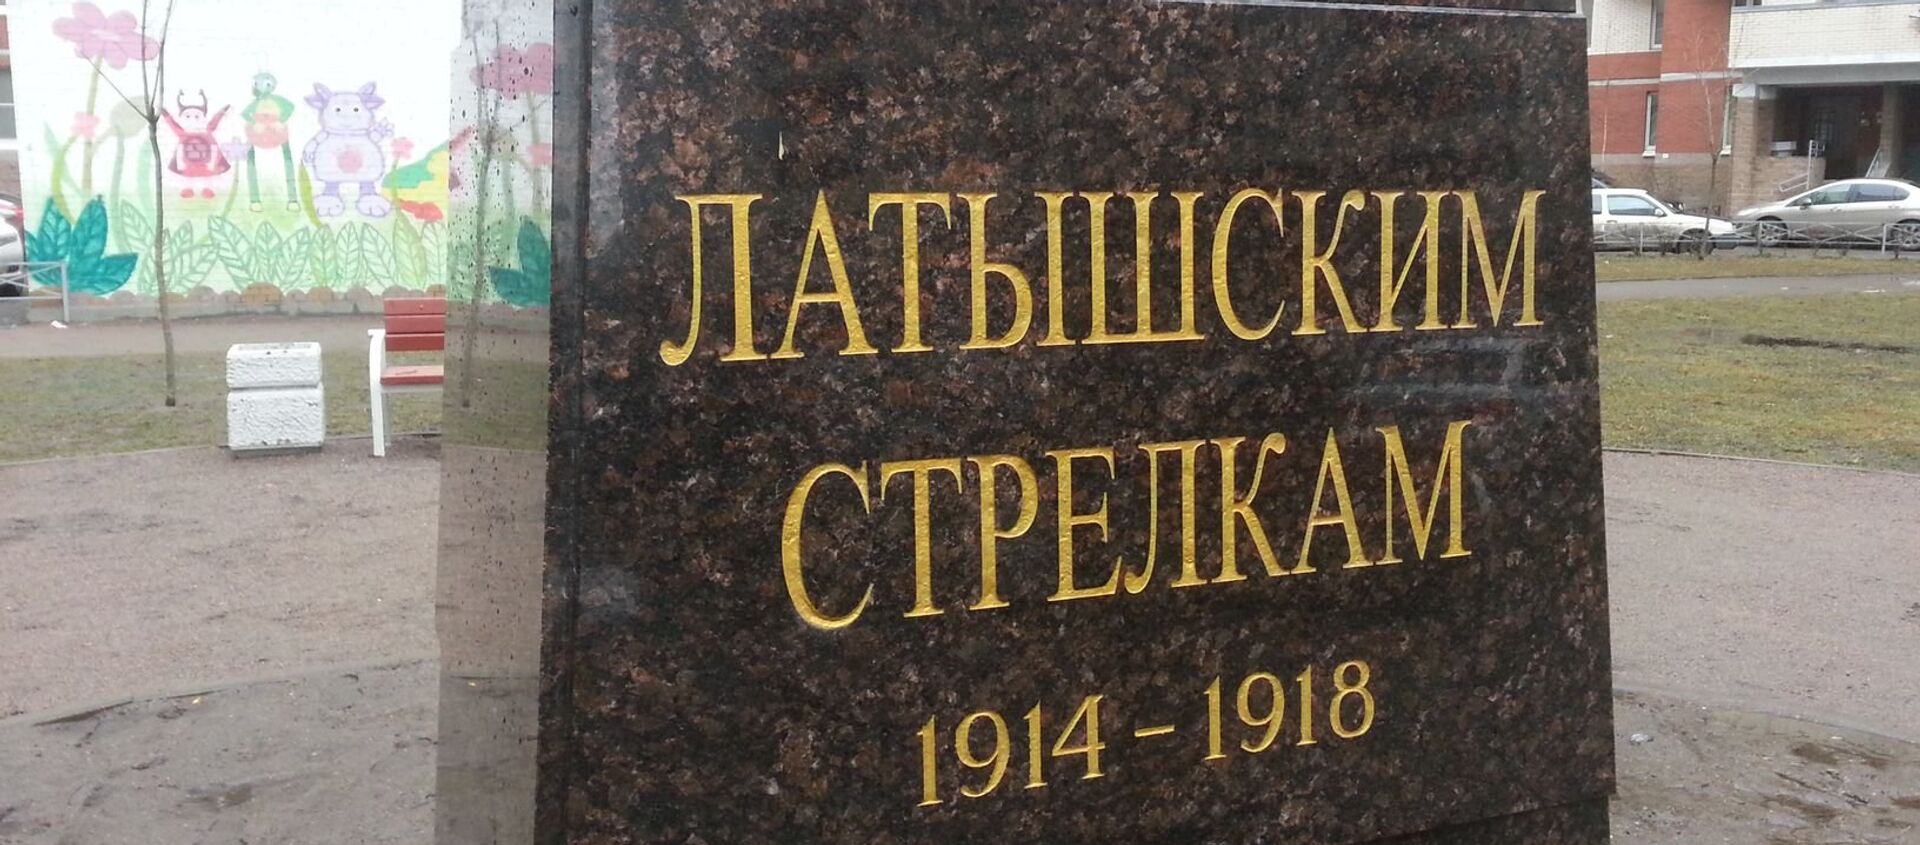 Visi uzraksti - krievu valodā, lai arī strēlnieki ir latvieši - Sputnik Latvija, 1920, 25.03.2017